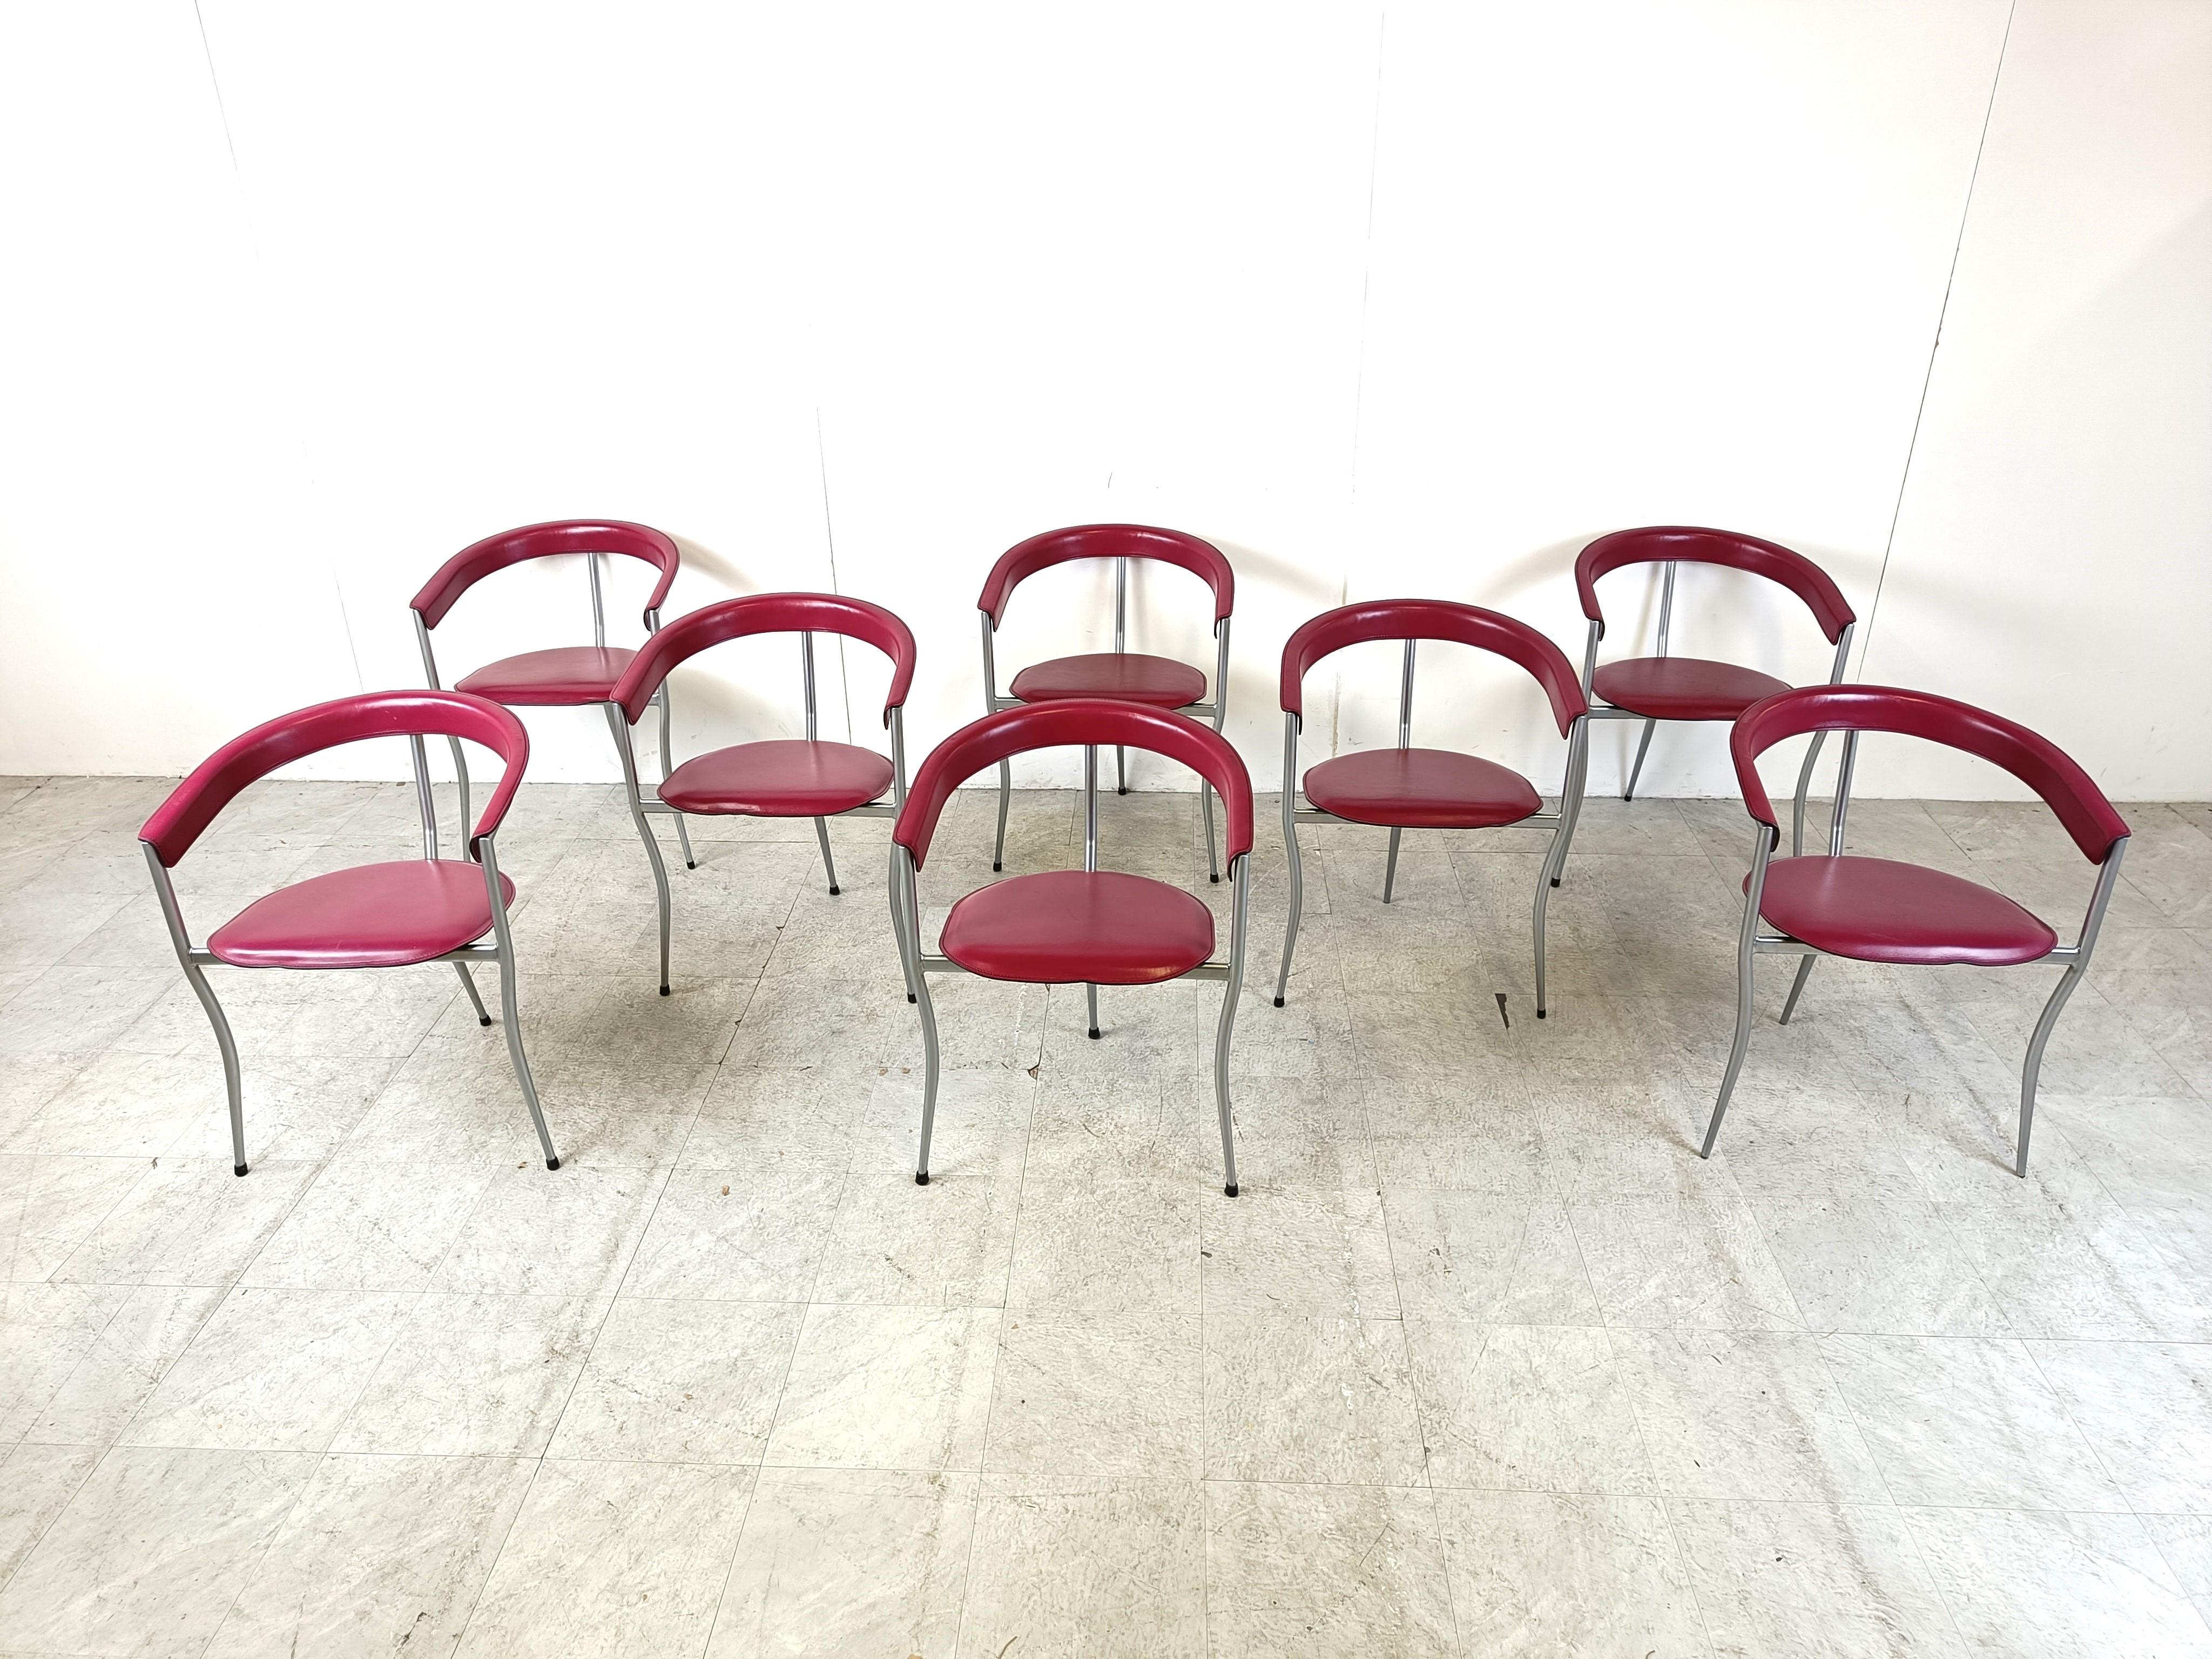 Ensemble de 8 fauteuils en cuir rose par Arrben Italie.

De beaux dossiers incurvés formant les accoudoirs, avec des sièges en cuir et une élégante structure en métal gris.

Les chaises portent l'inscription 